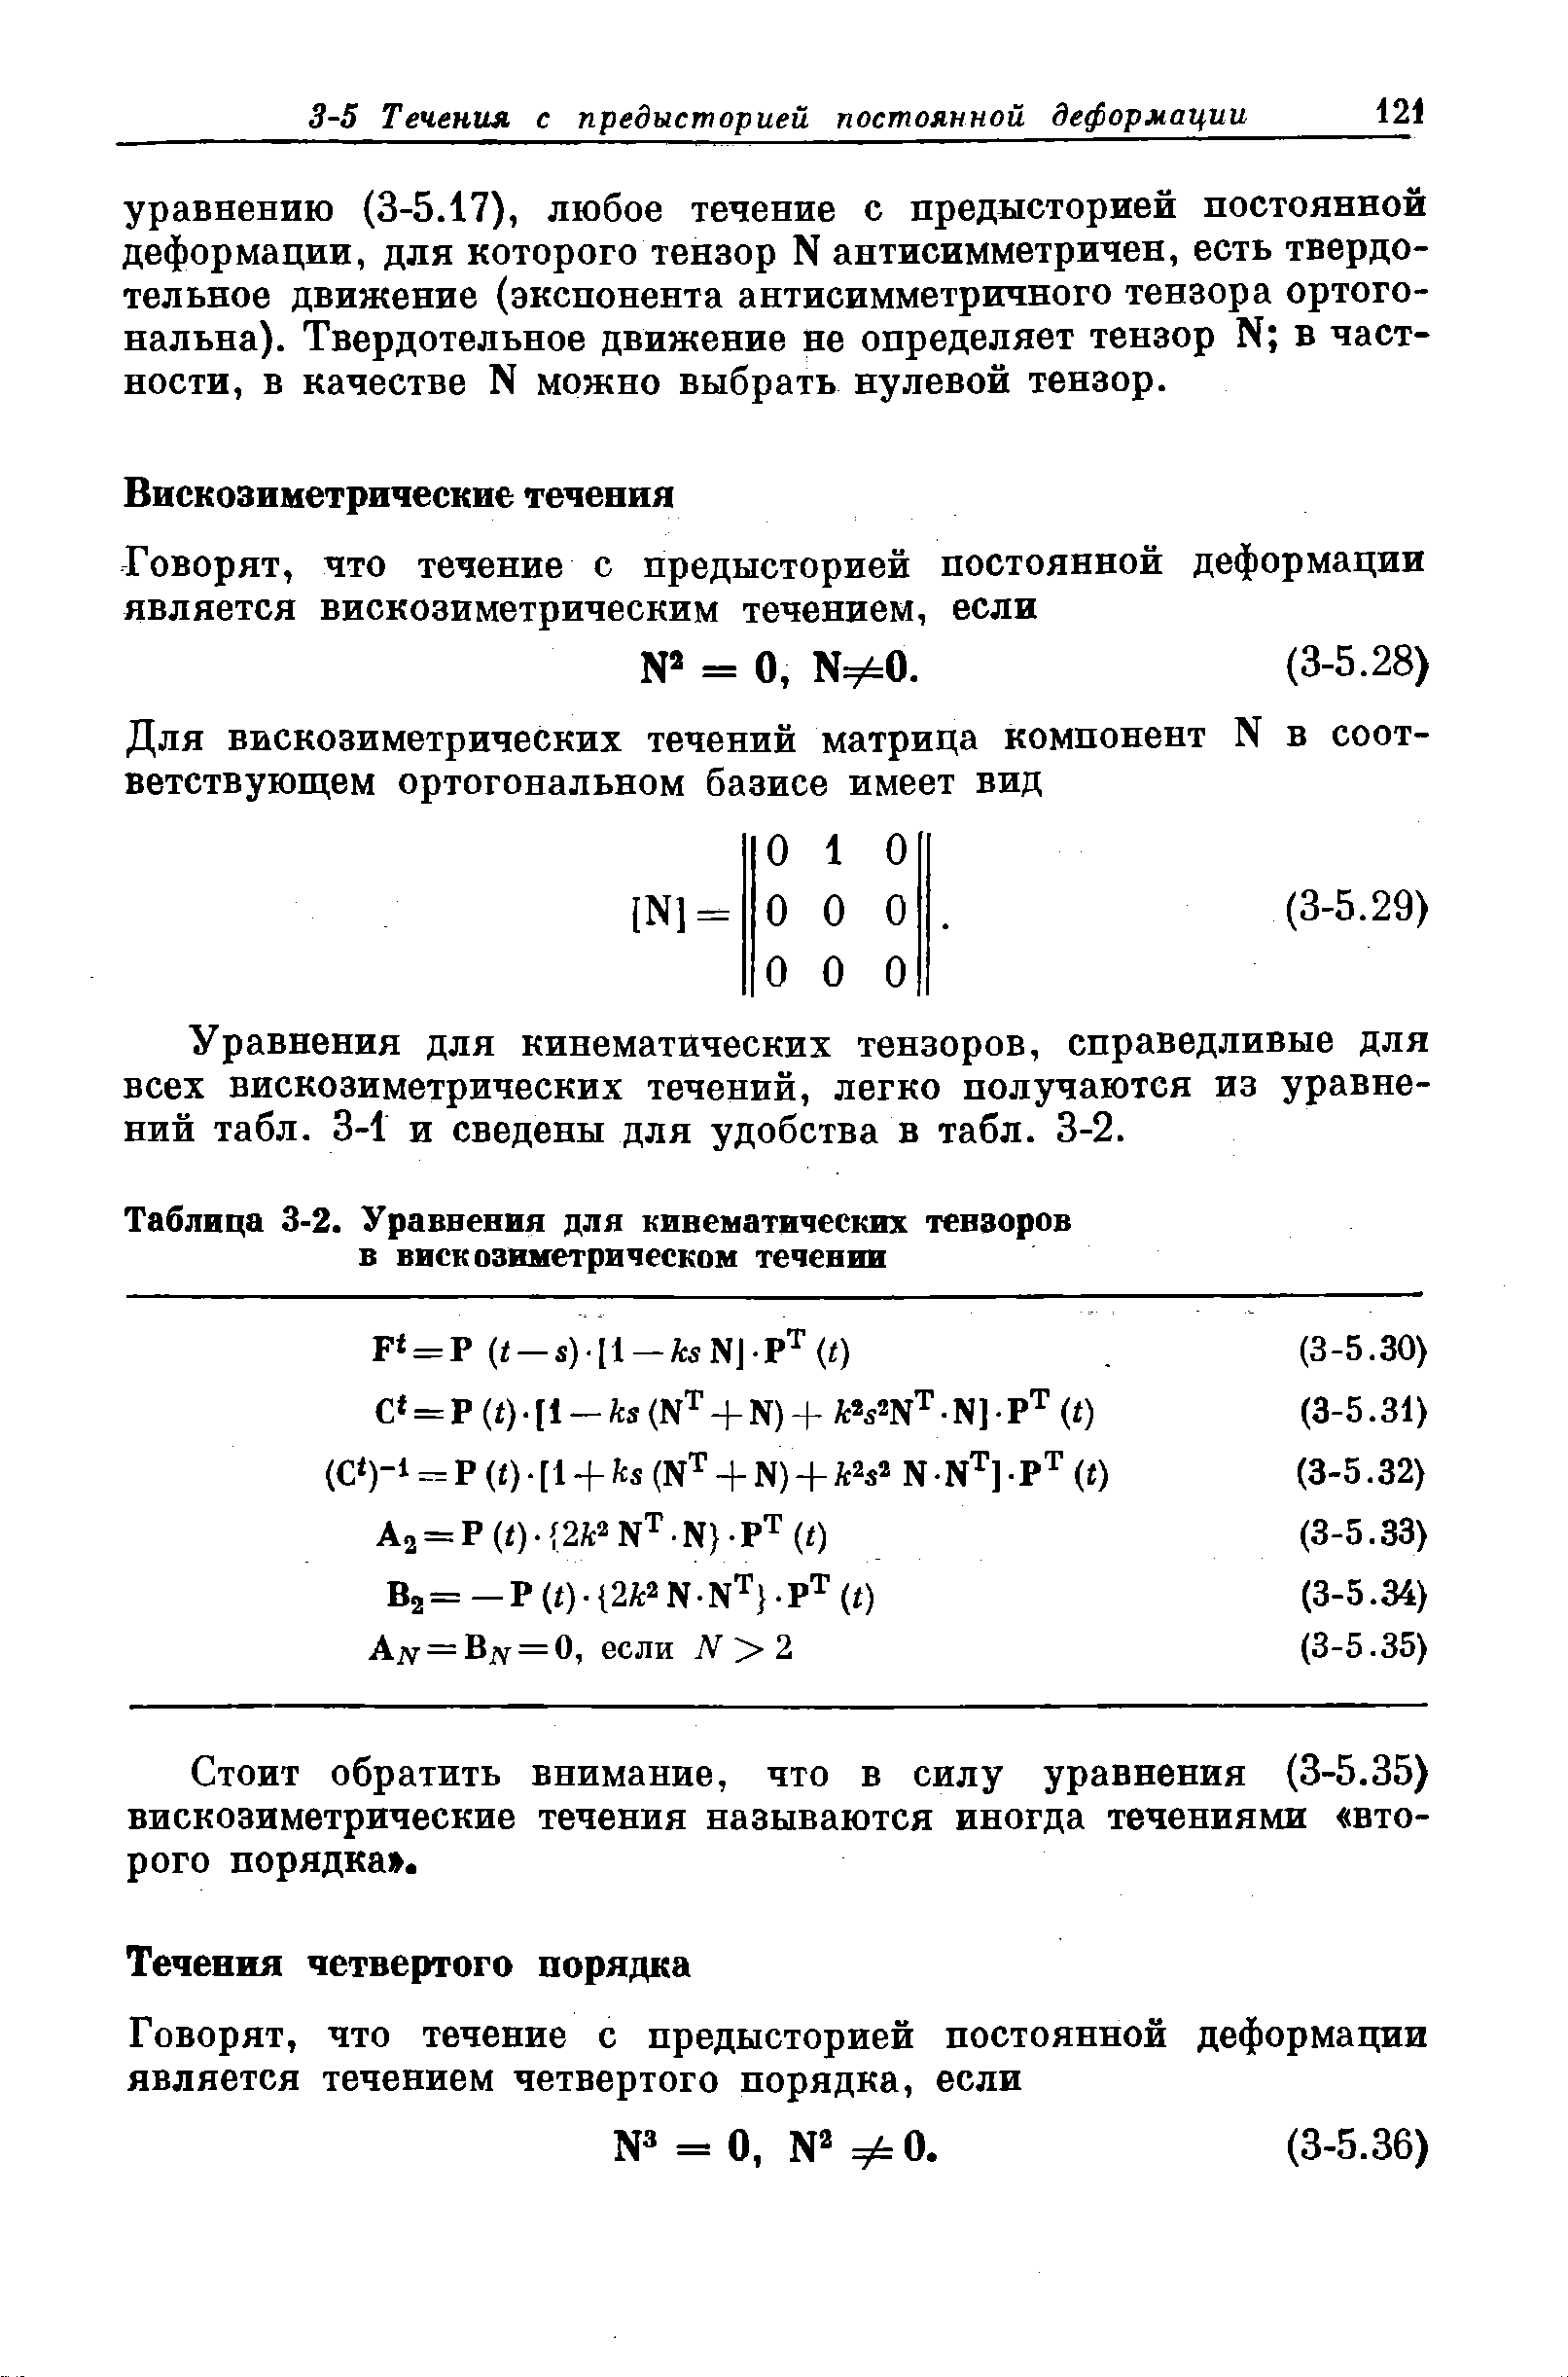 Таблица 3-2. <a href="/info/6840">Уравнения</a> для кинематических тензоров в вискозвметричееком течении
